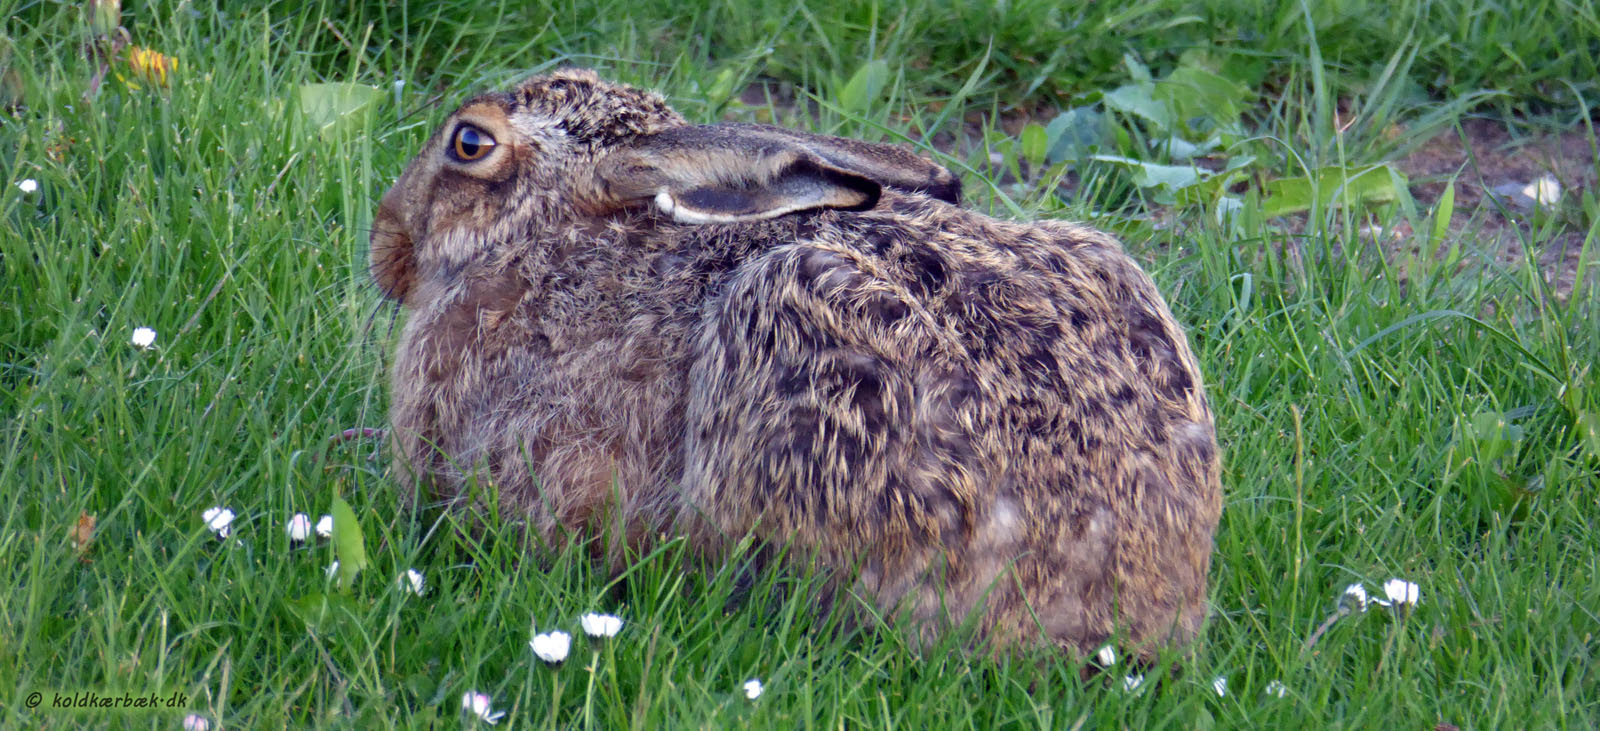 Hare ved Koldkær Bæk. 13-5-2014. Haren er et fantastisk dyr. Det vil være trist, hvis kommende generationer berøves oplevelsen af haren i det åbne landskab.